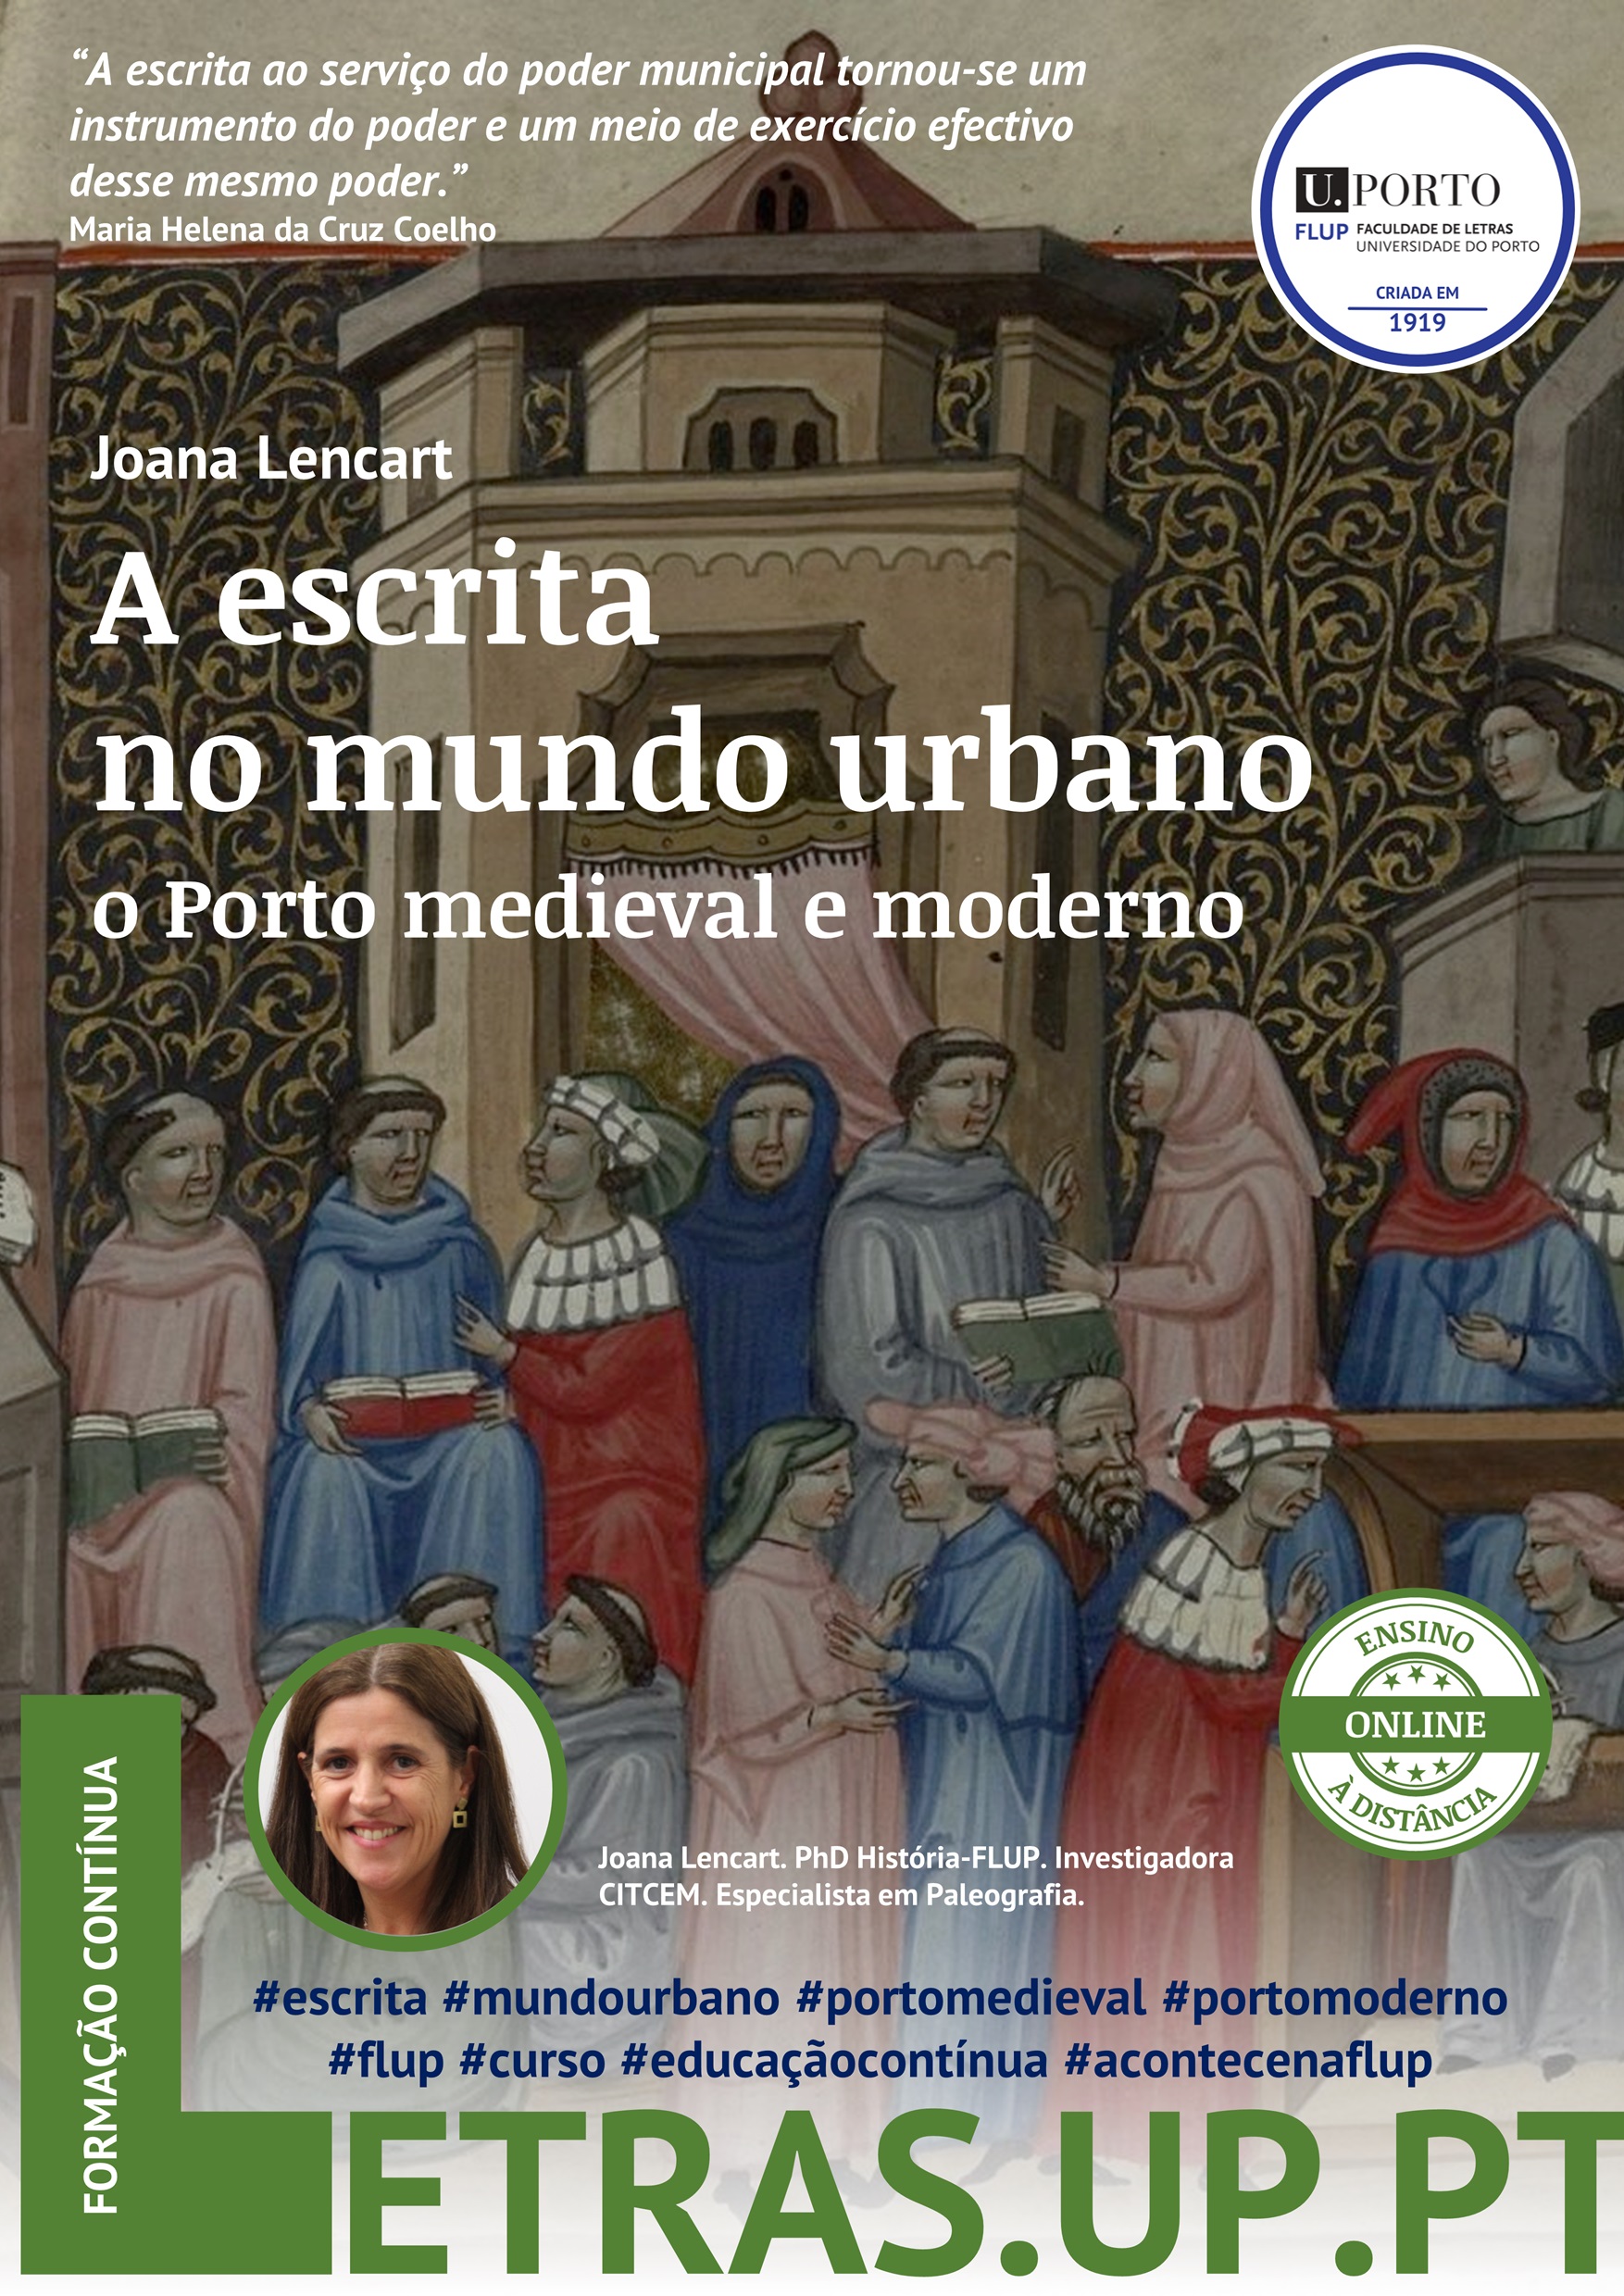 A escrita no mundo urbano: o Porto medieval e moderno